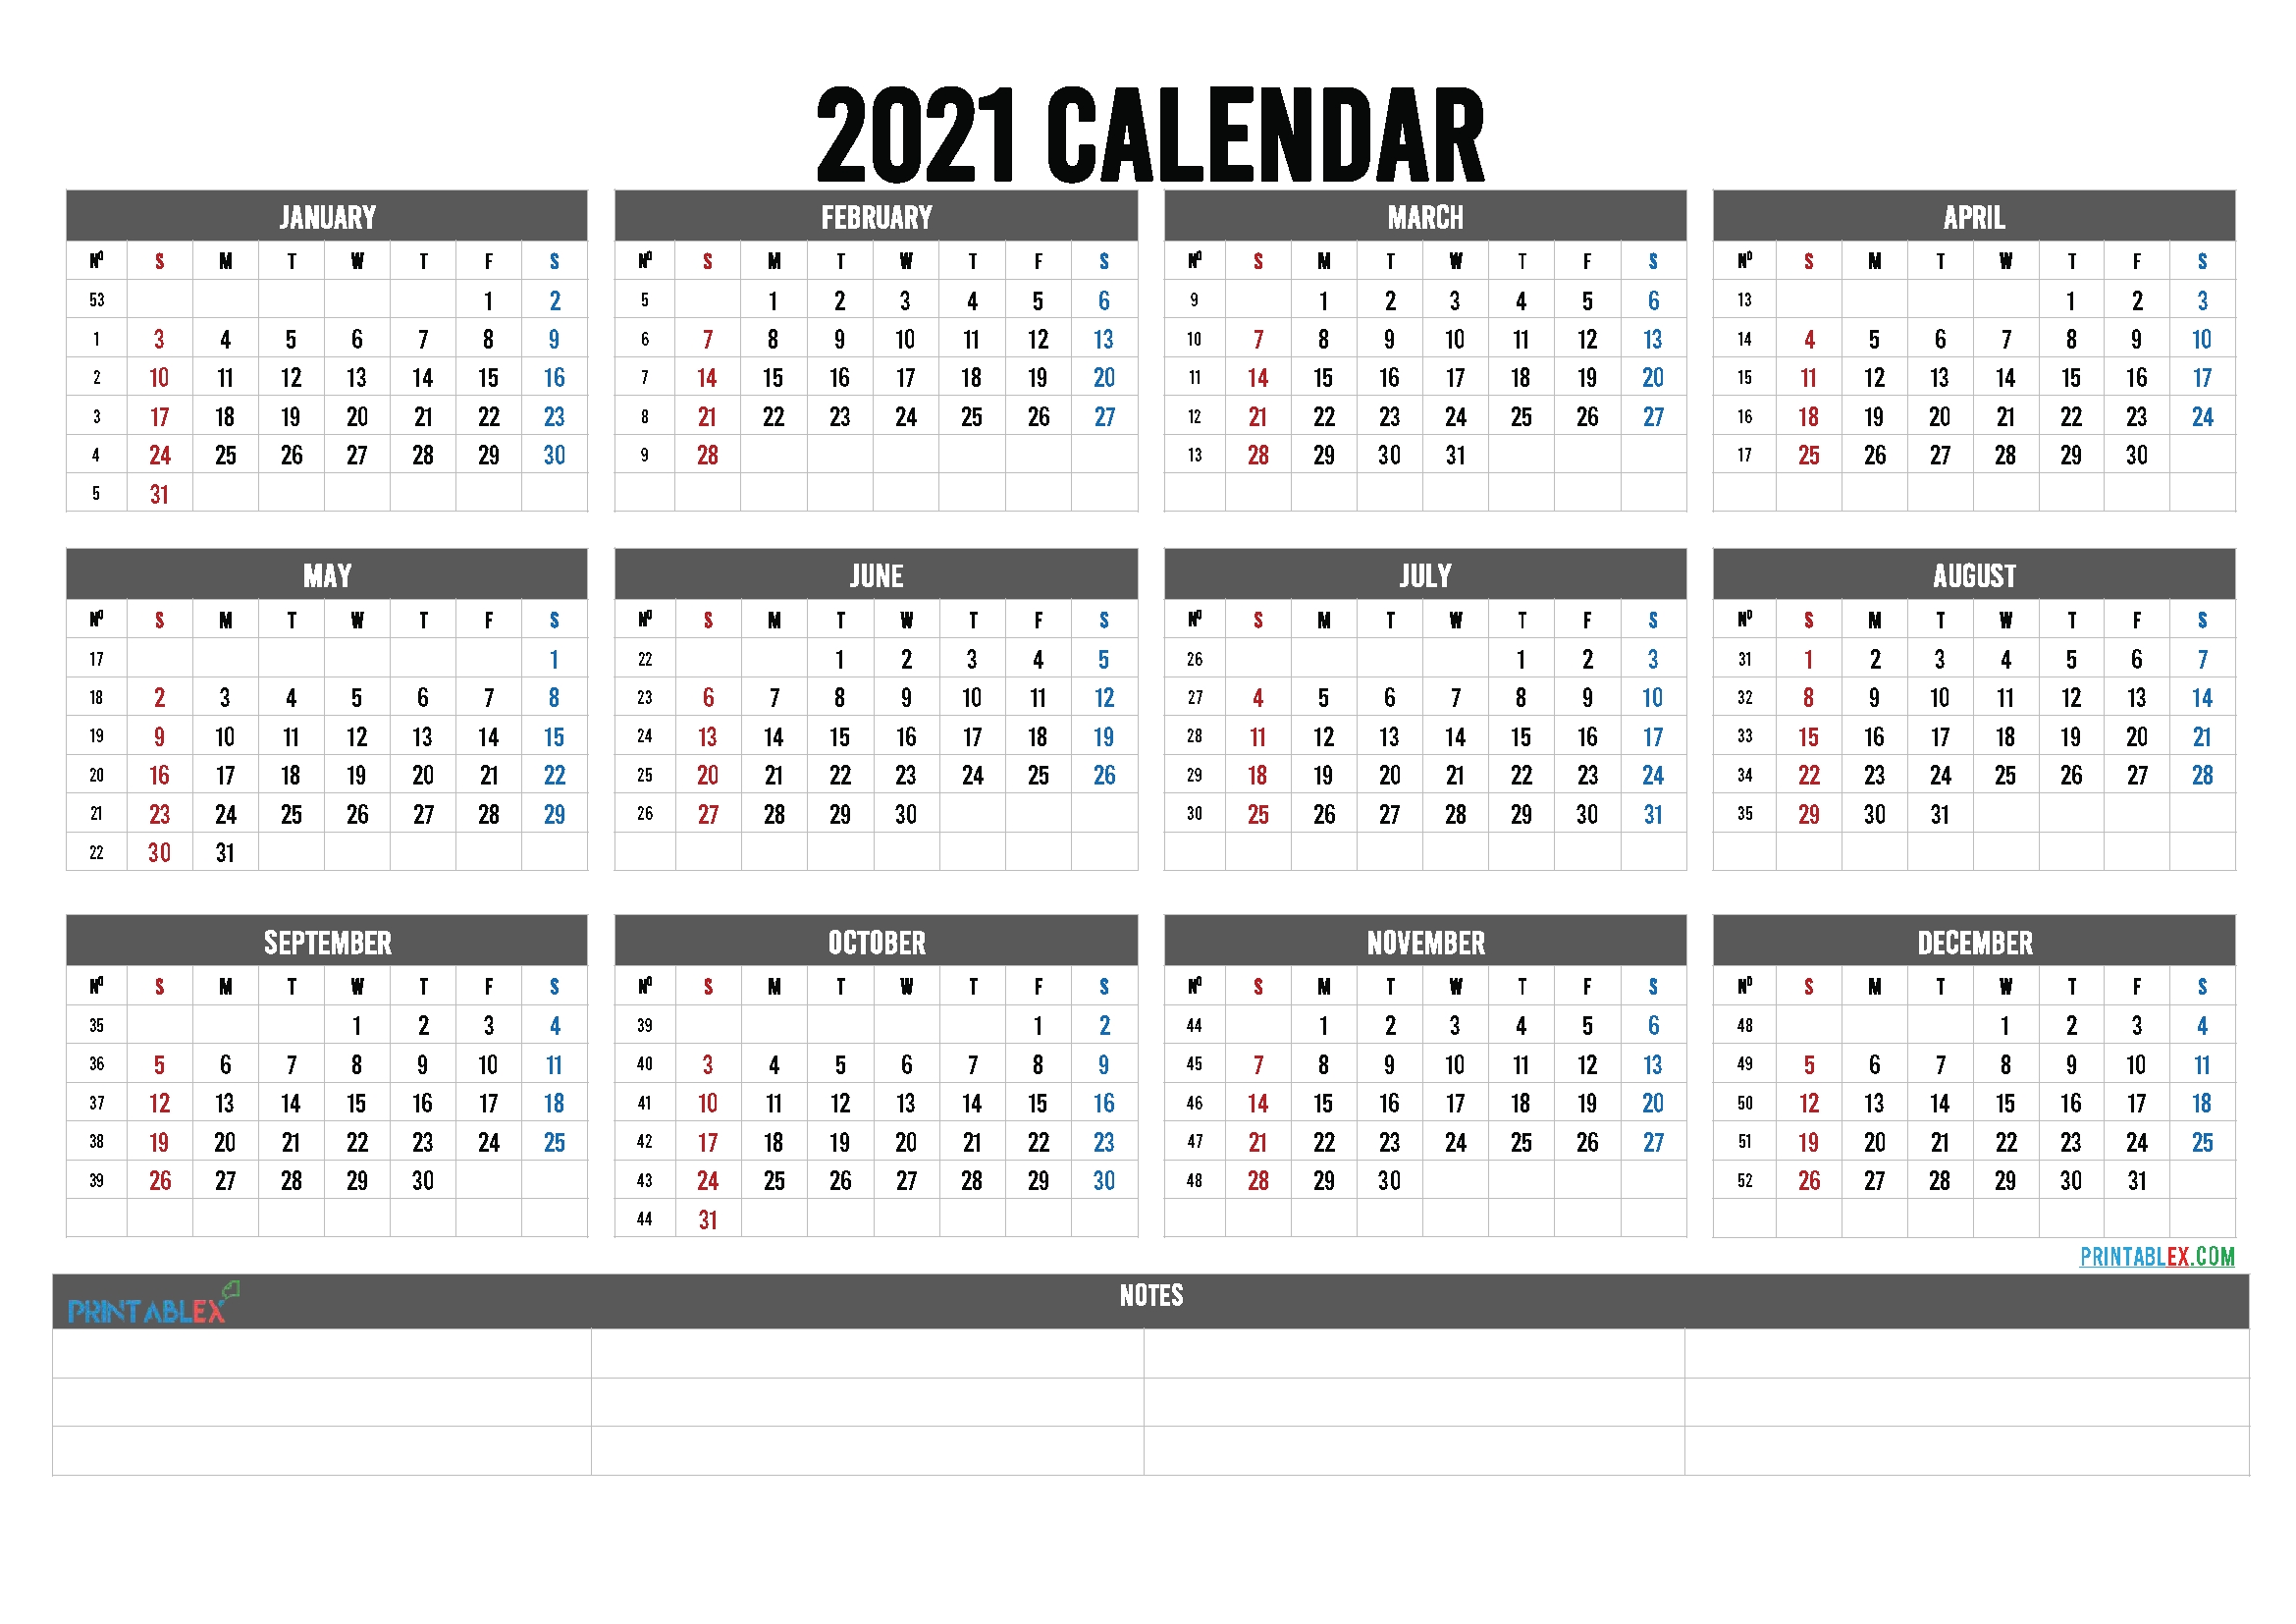 Take 2021 Calendar By Week